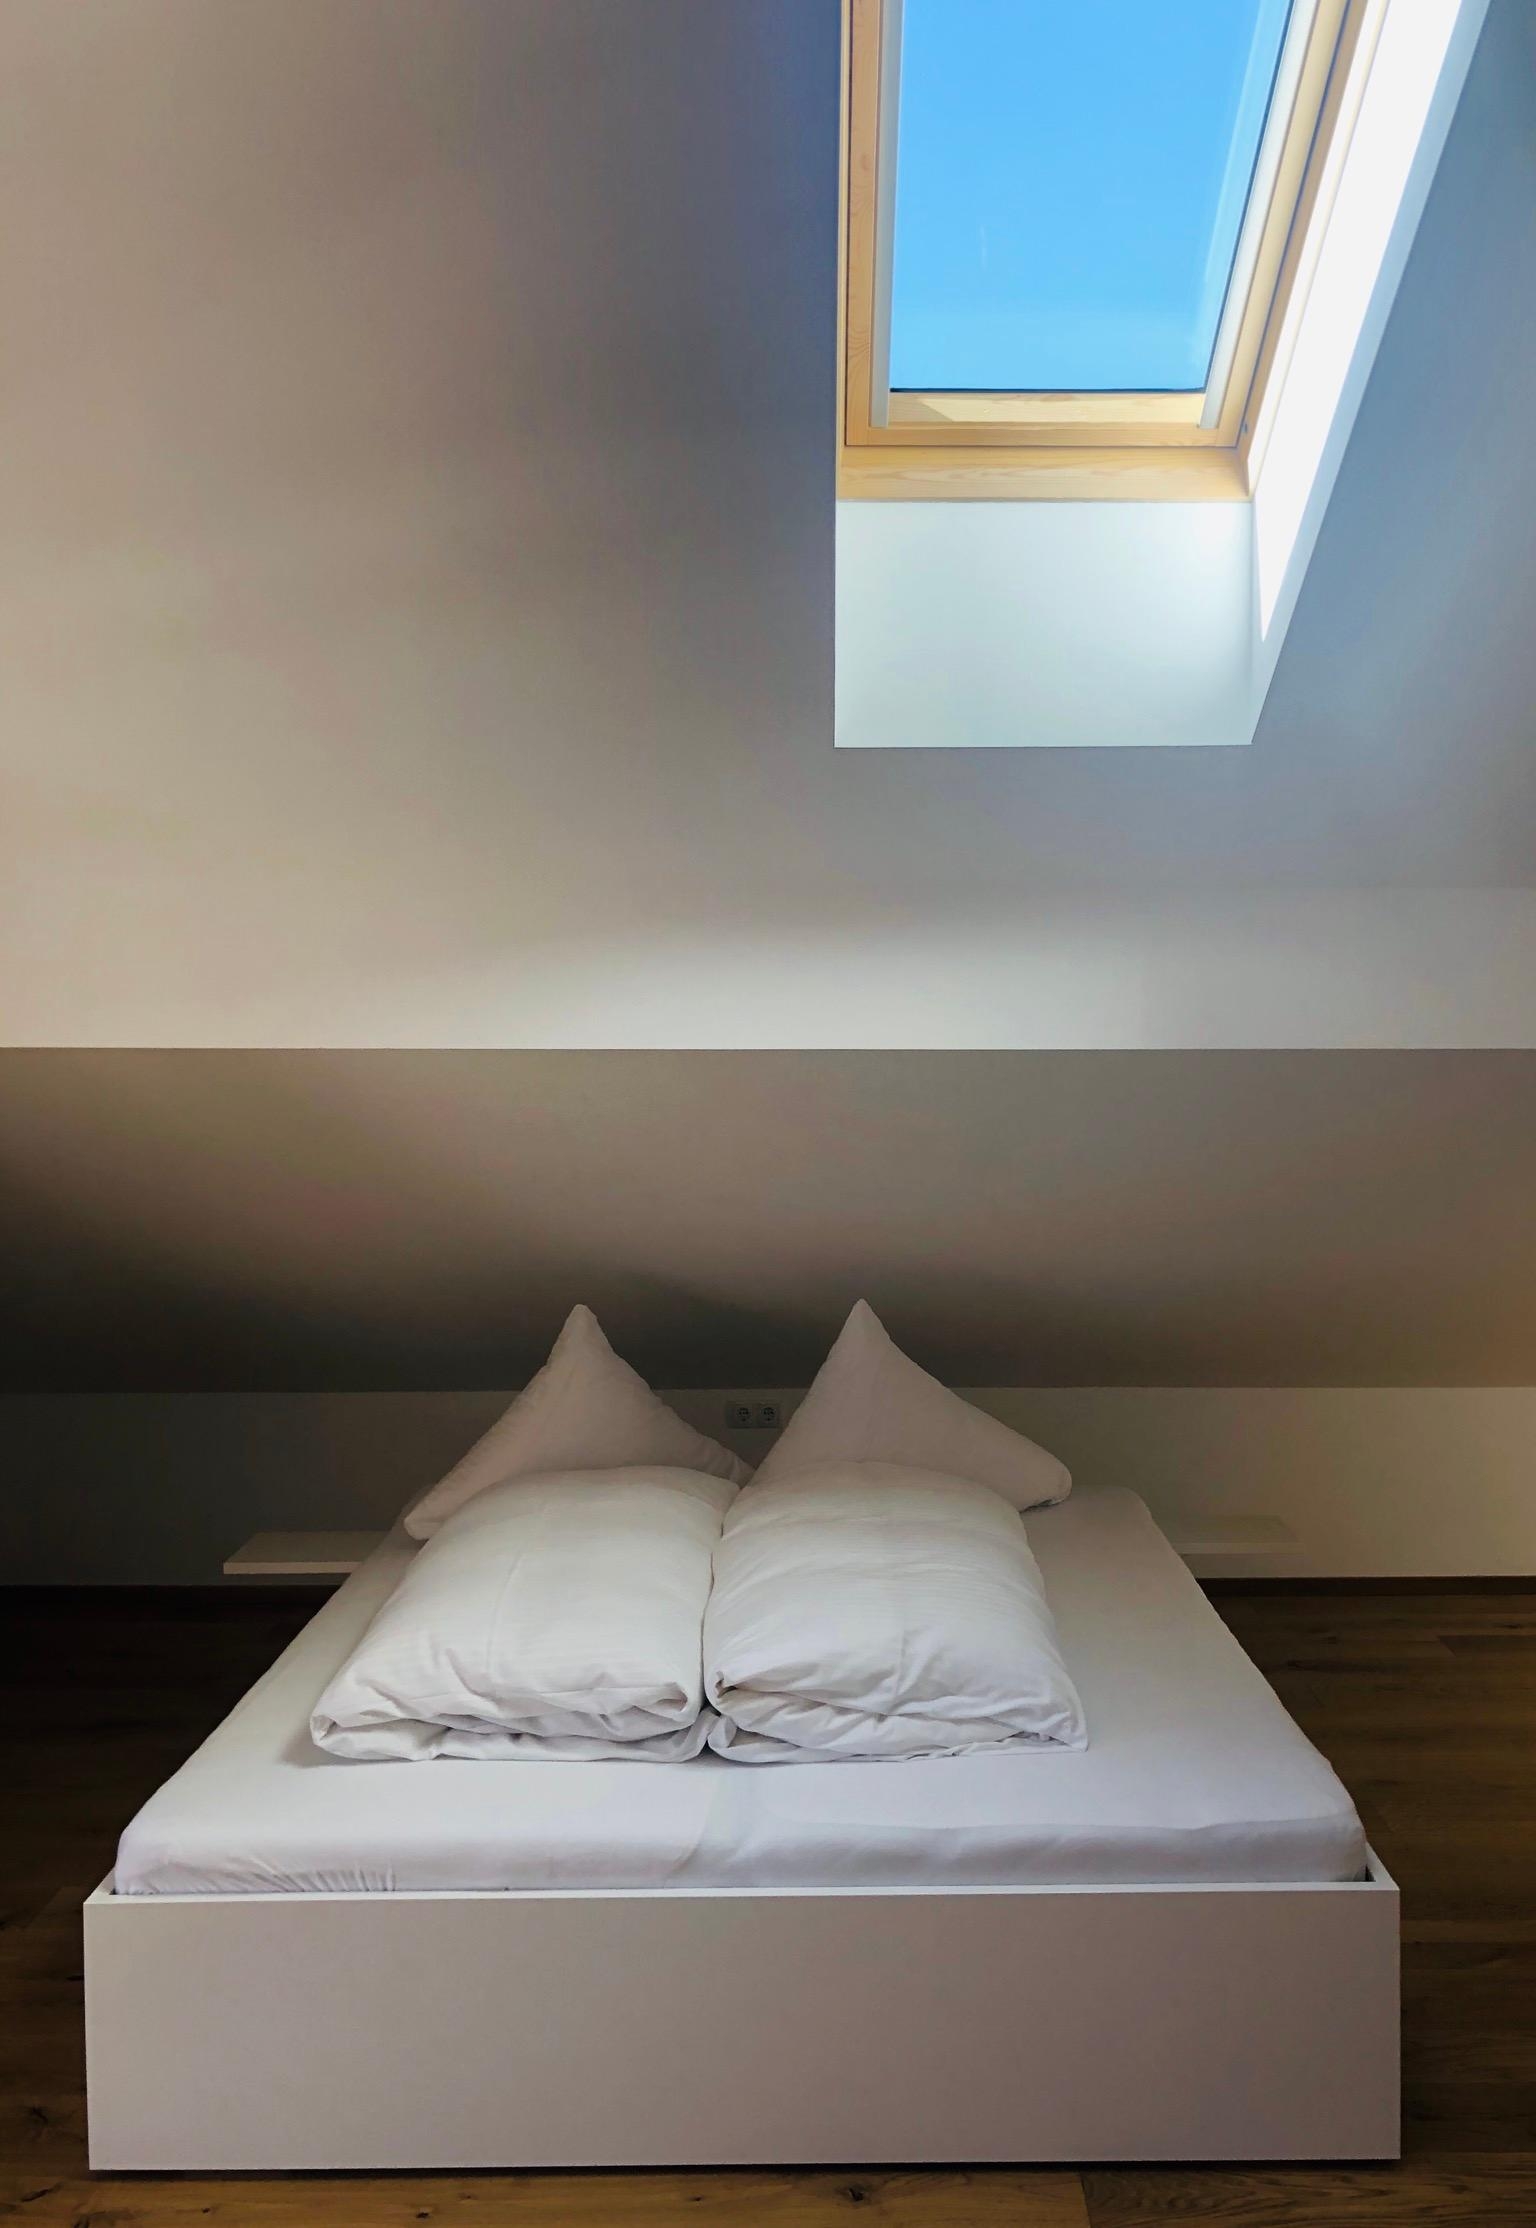 Eine kleine Runde #minimalismus für alle #dachgeschoss #schlafzimmer #weiß #dachschräge ☀️ #dachgeschosswohnung